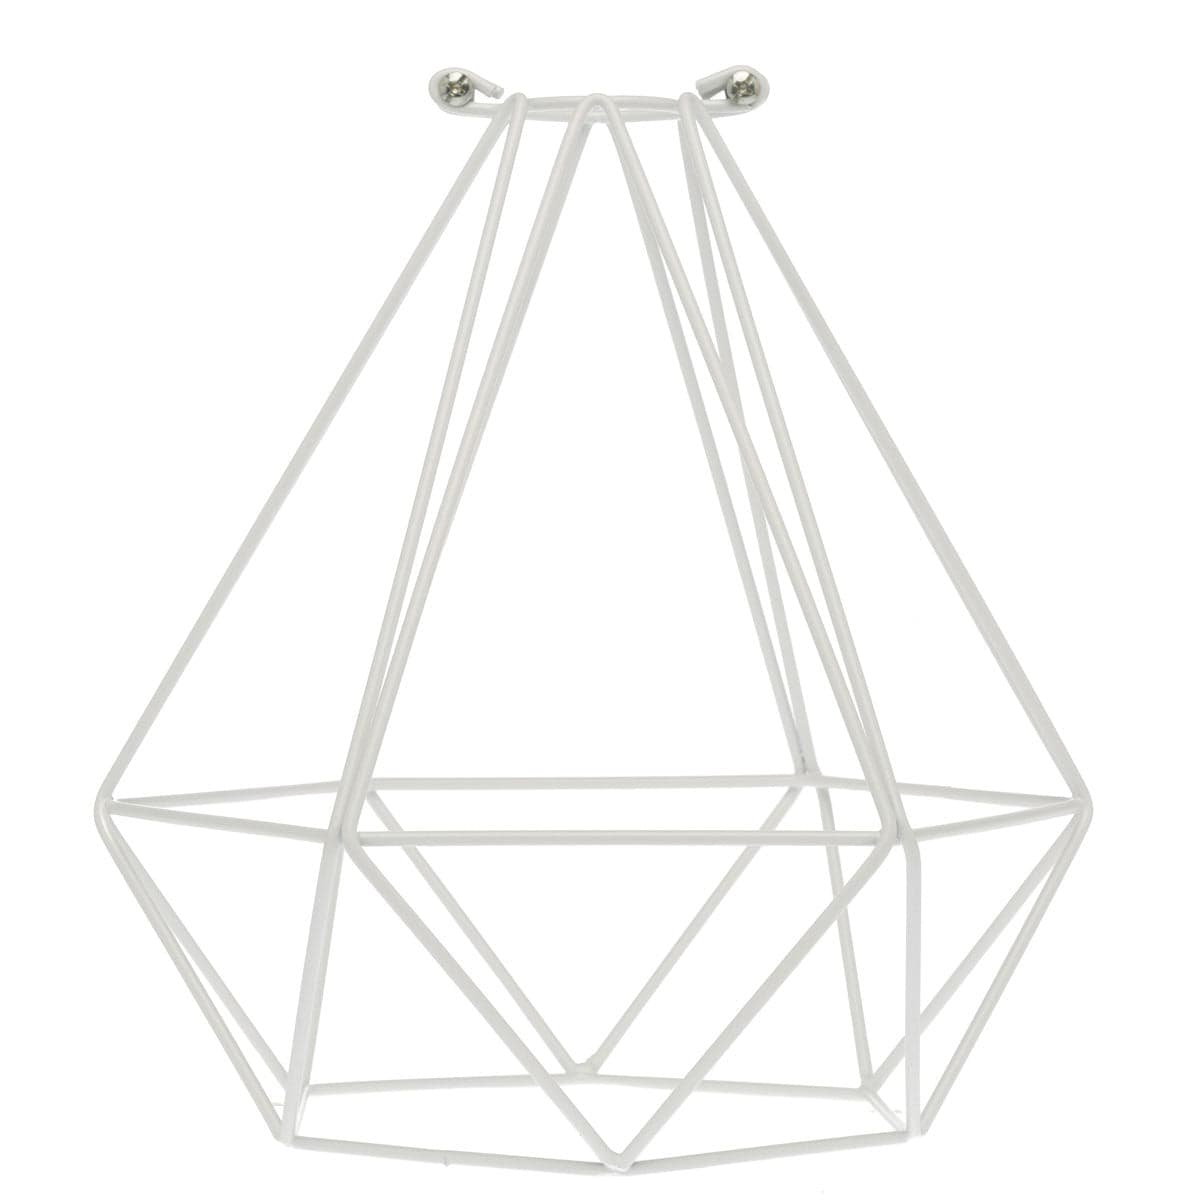 Geometric Bulb Cage